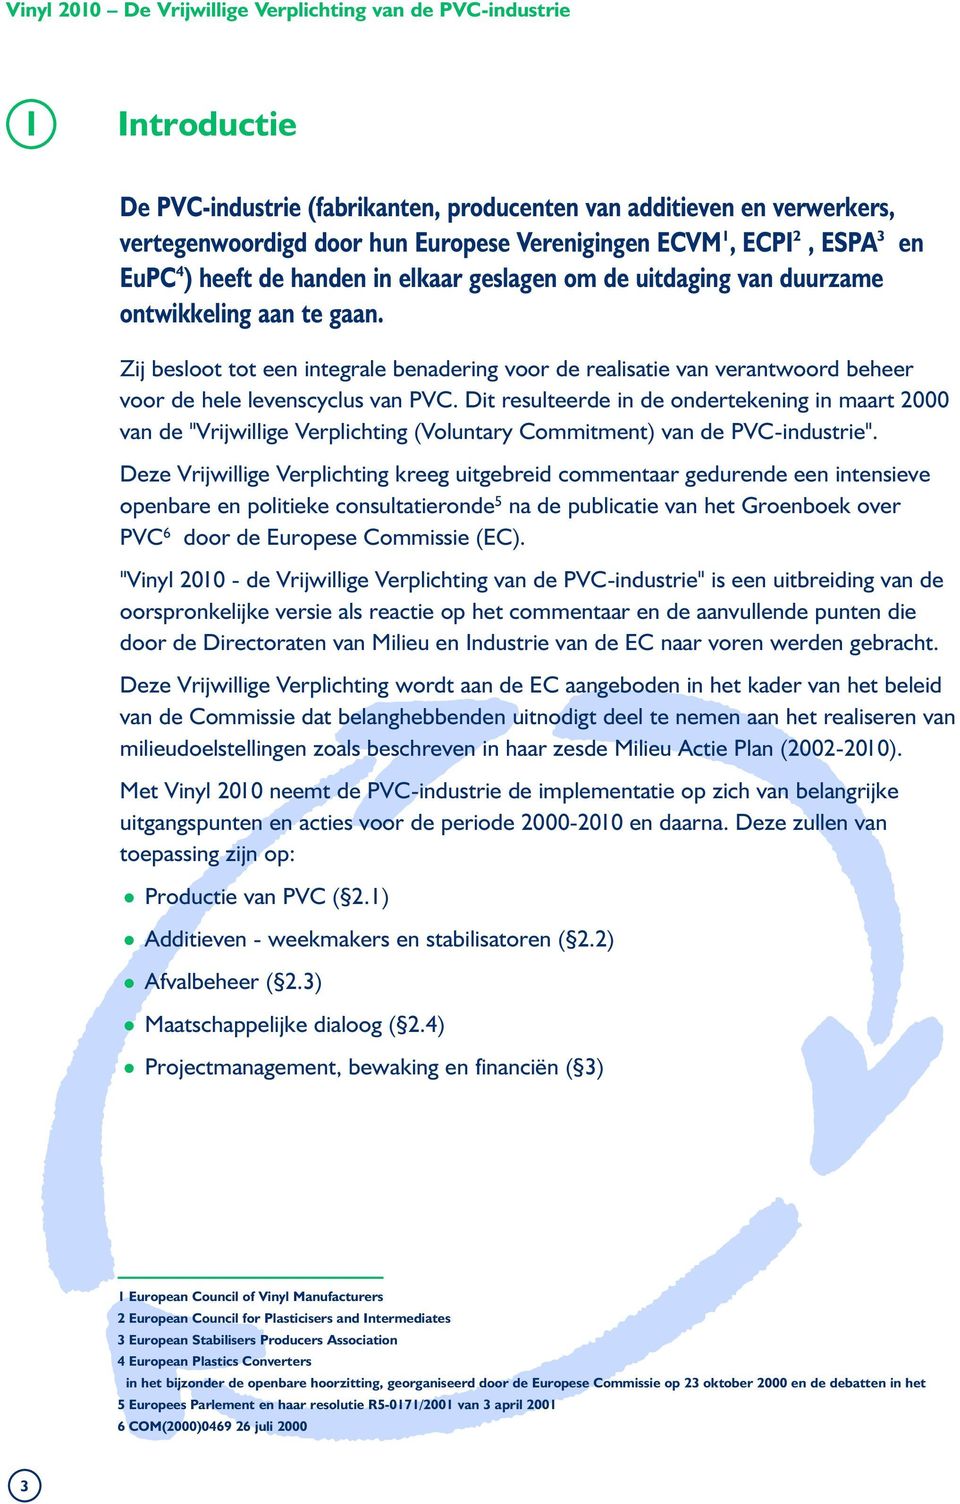 Dit resulteerde in de ondertekening in maart 2000 van de "Vrijwillige Verplichting (Voluntary Commitment) van de PVC-industrie".